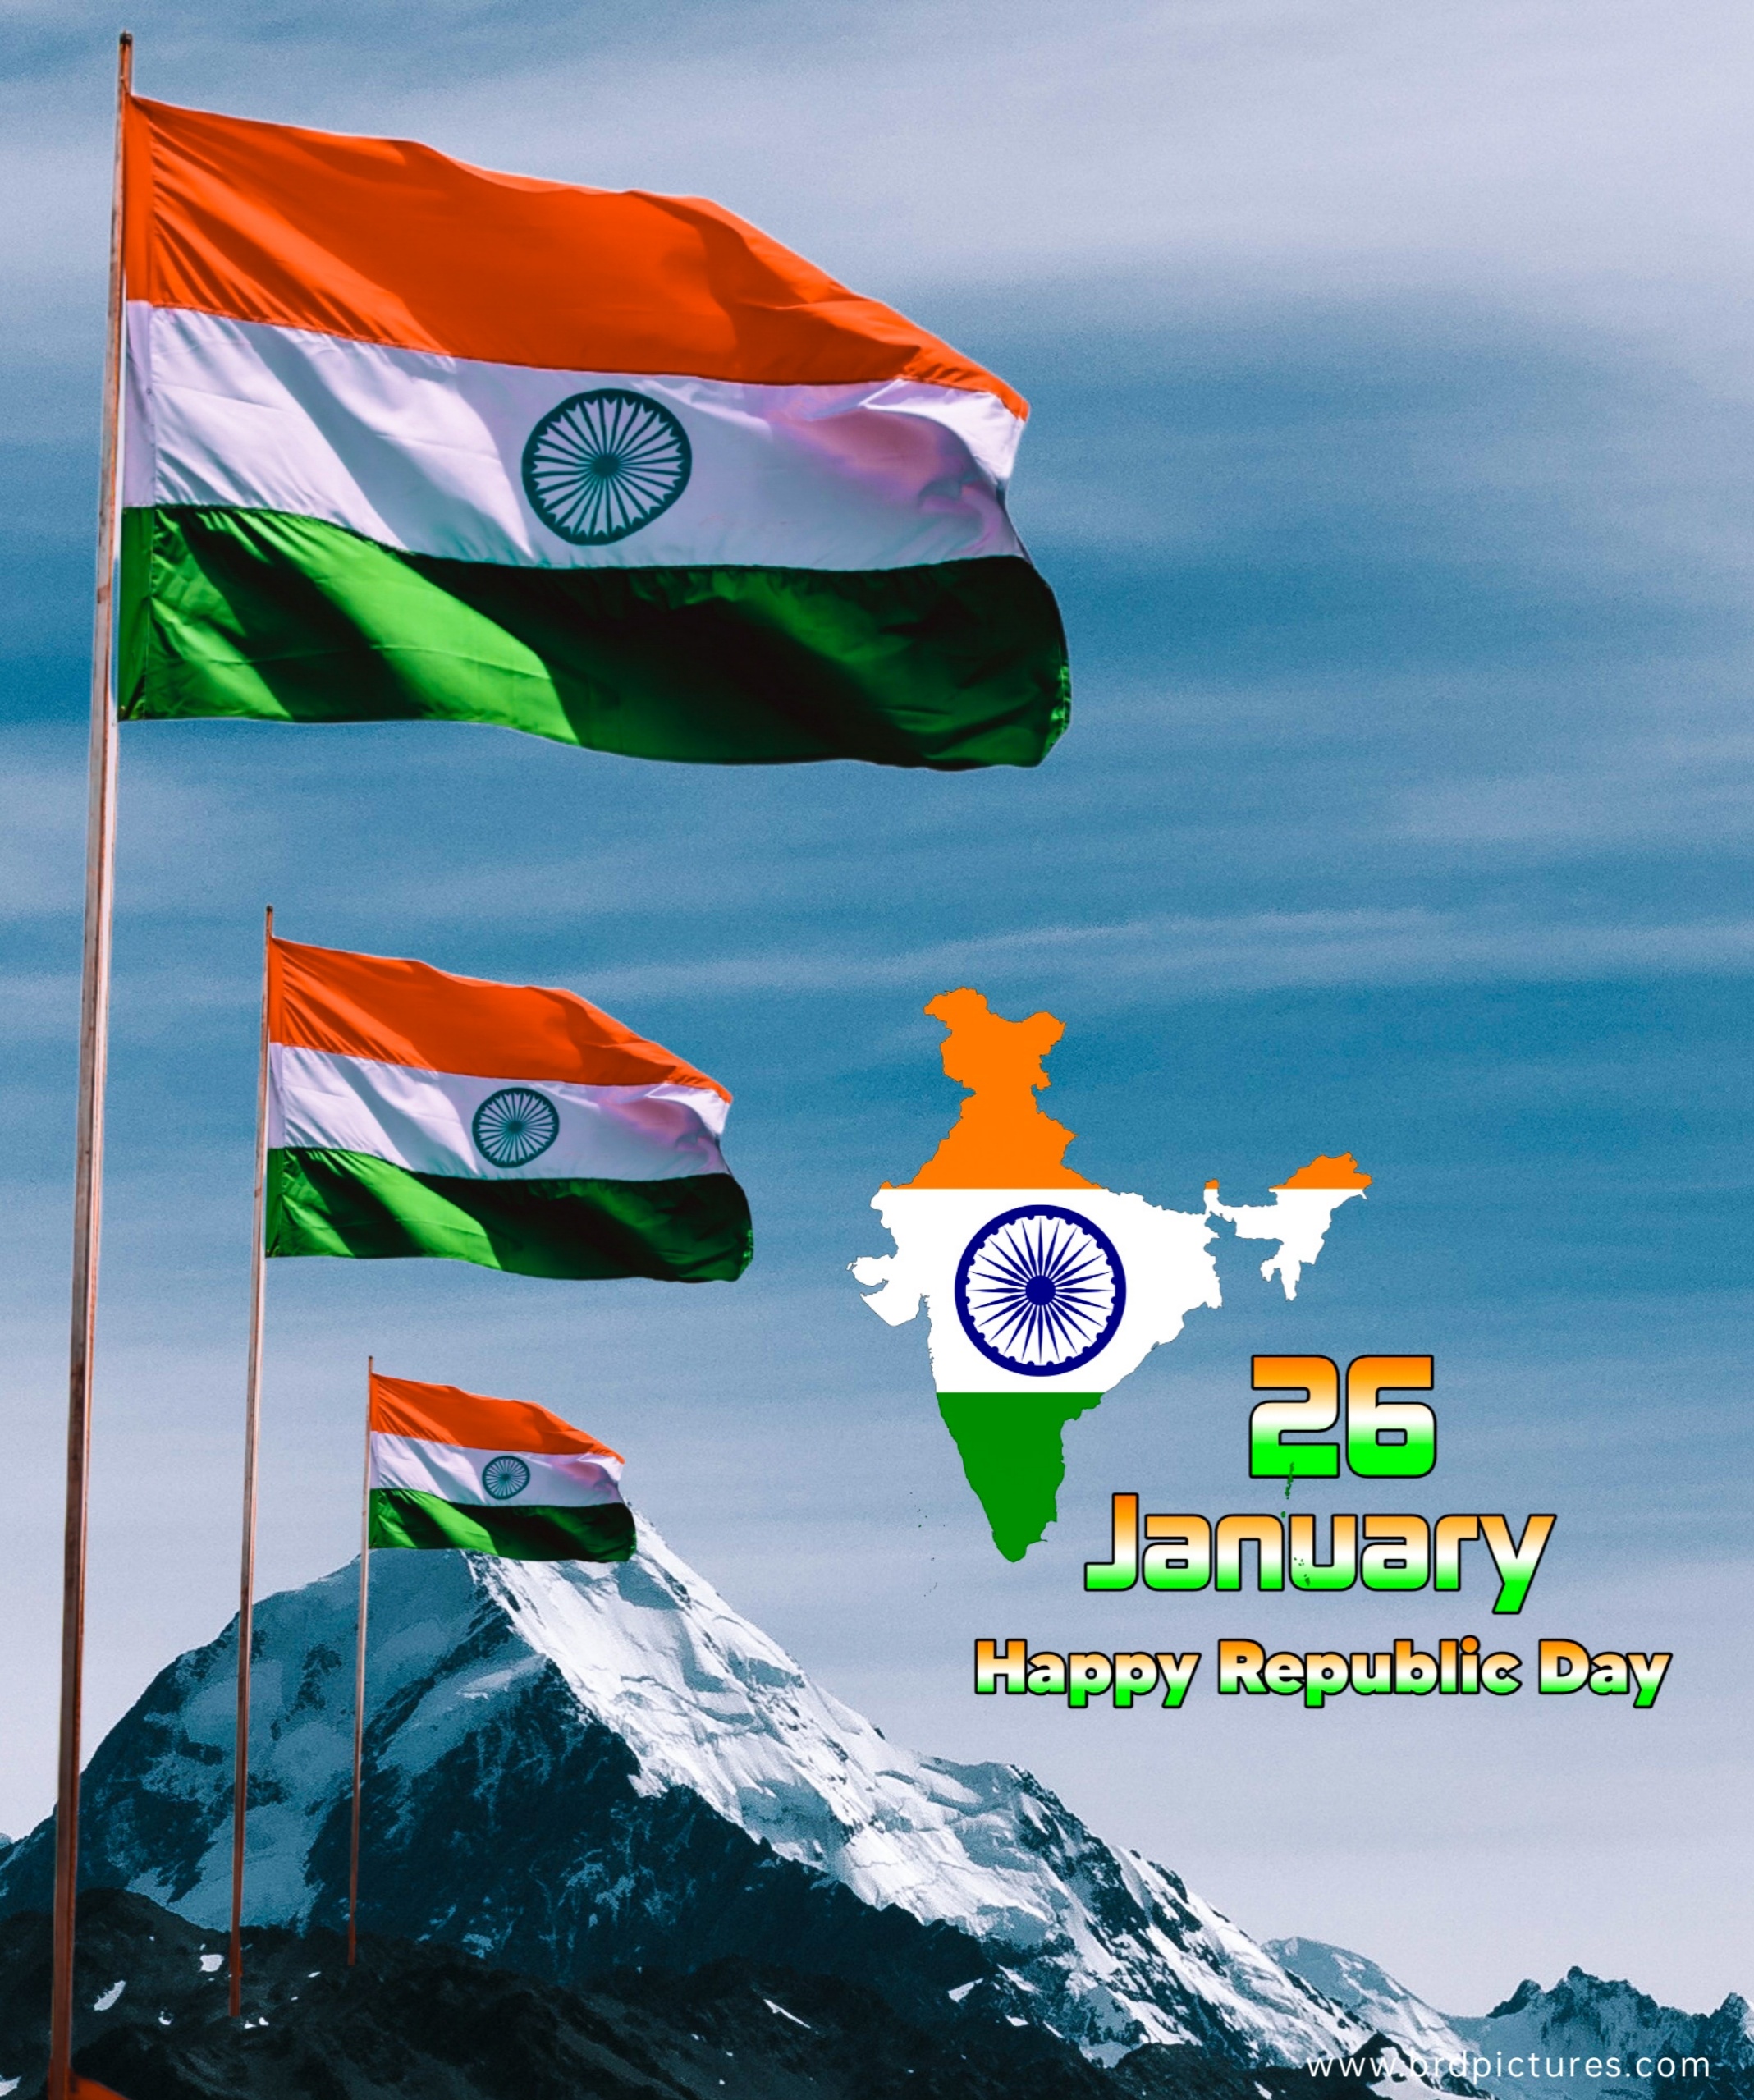 India Republic Day 26 January Flag Image 